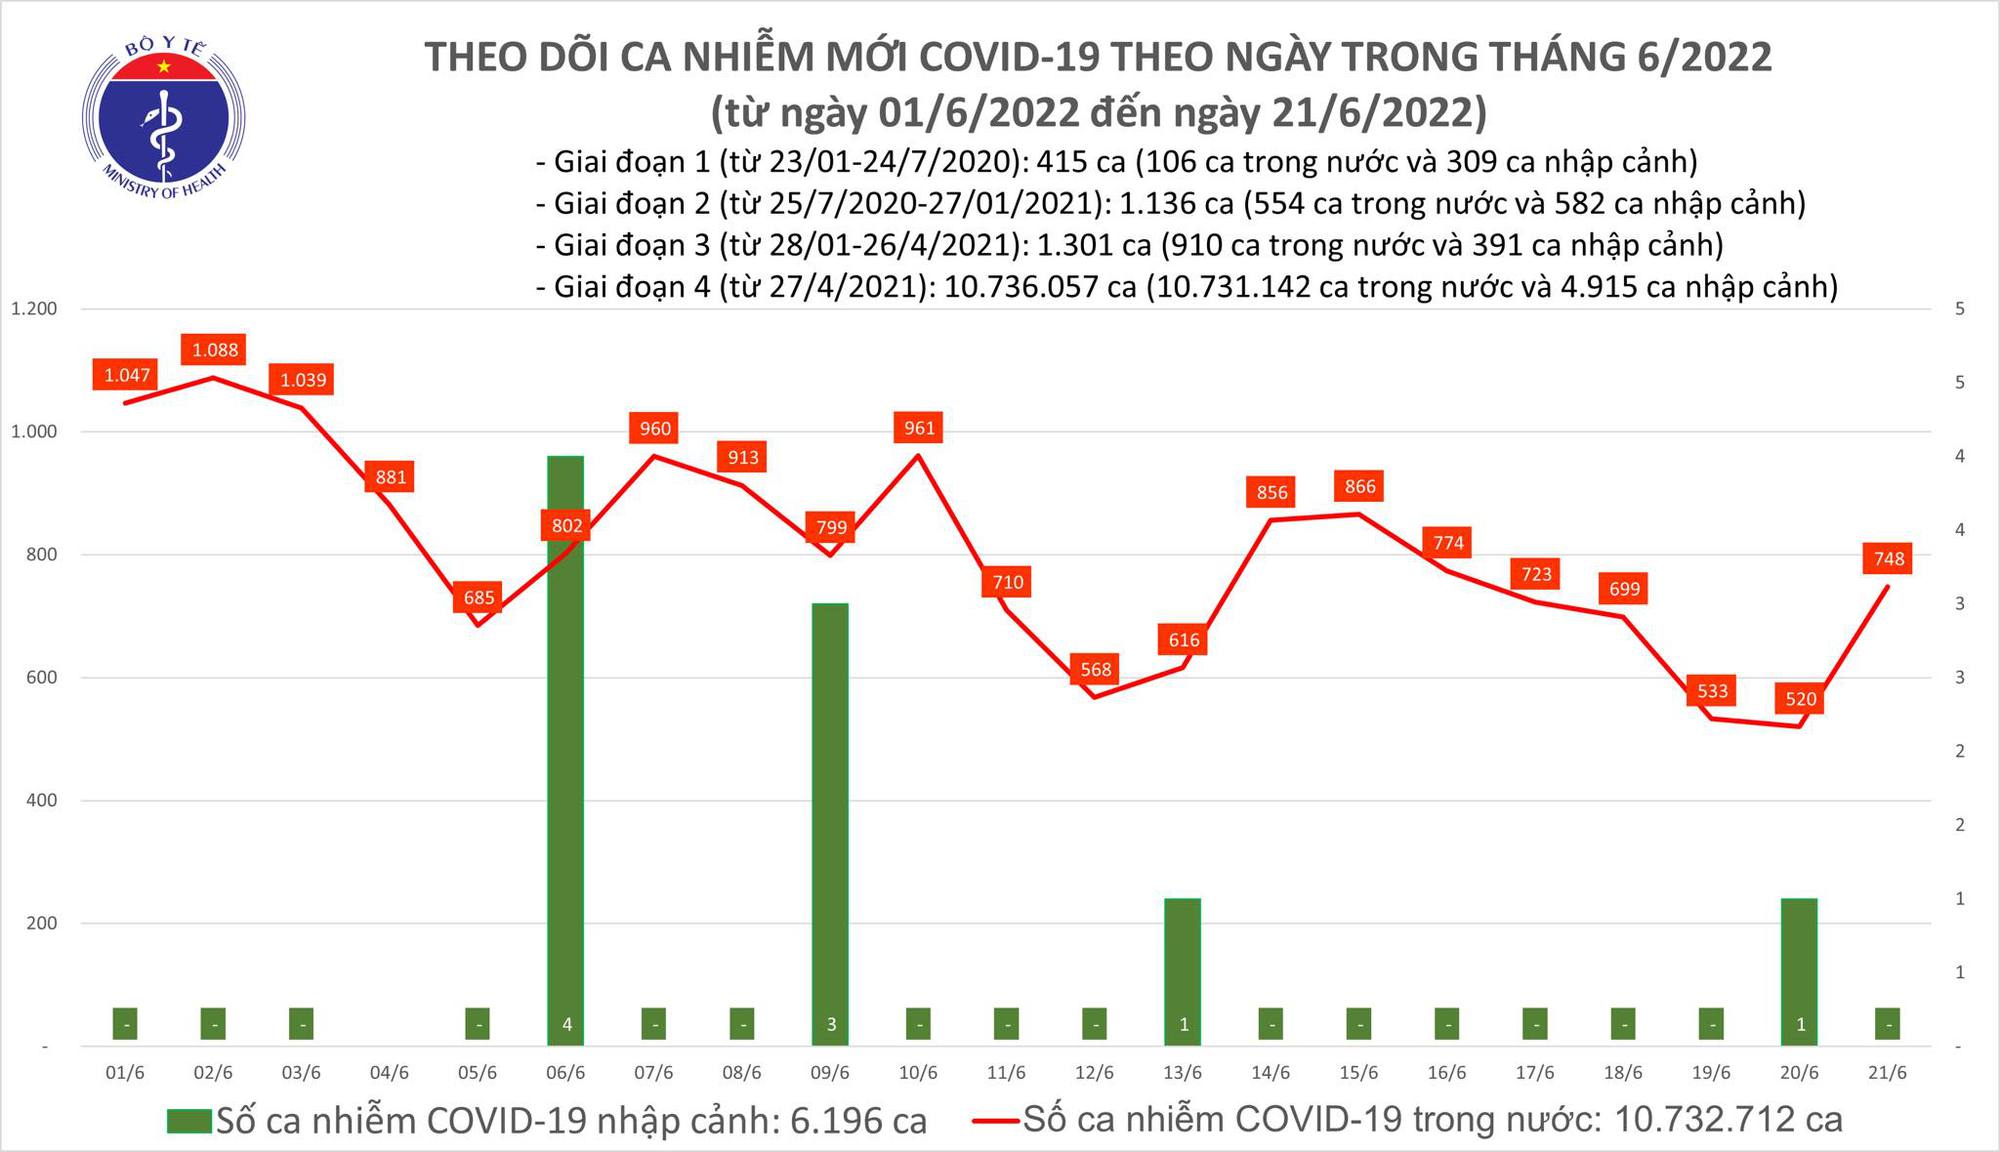 Ngày 21/6: Ca COVID-19 tăng lên 748; có 1 F0 tử vong tại Bến Tre - Ảnh 1.